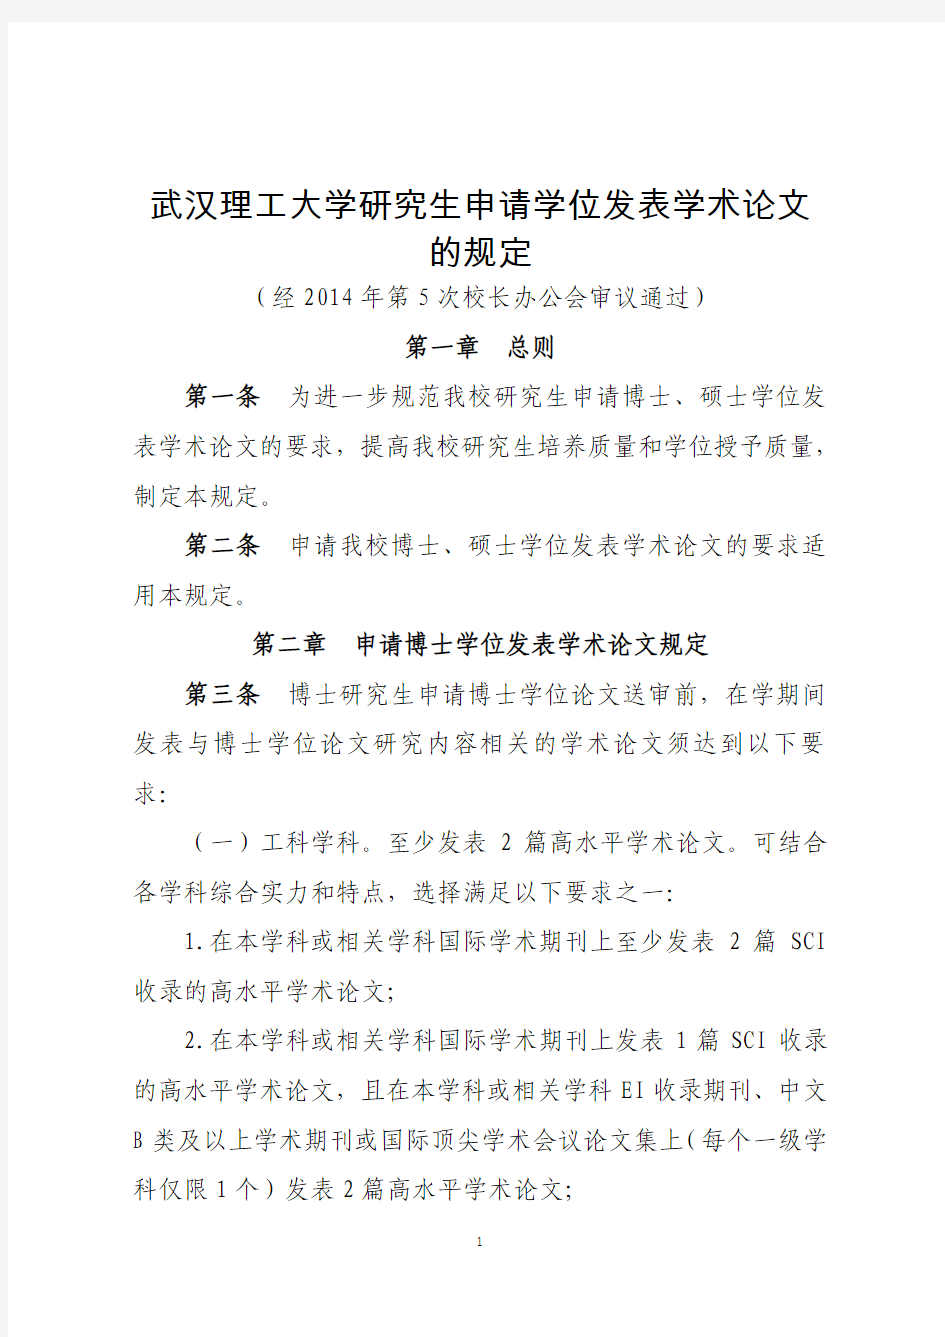 武汉理工大学研究生申请学位发表学术论文的规定 2014 0701